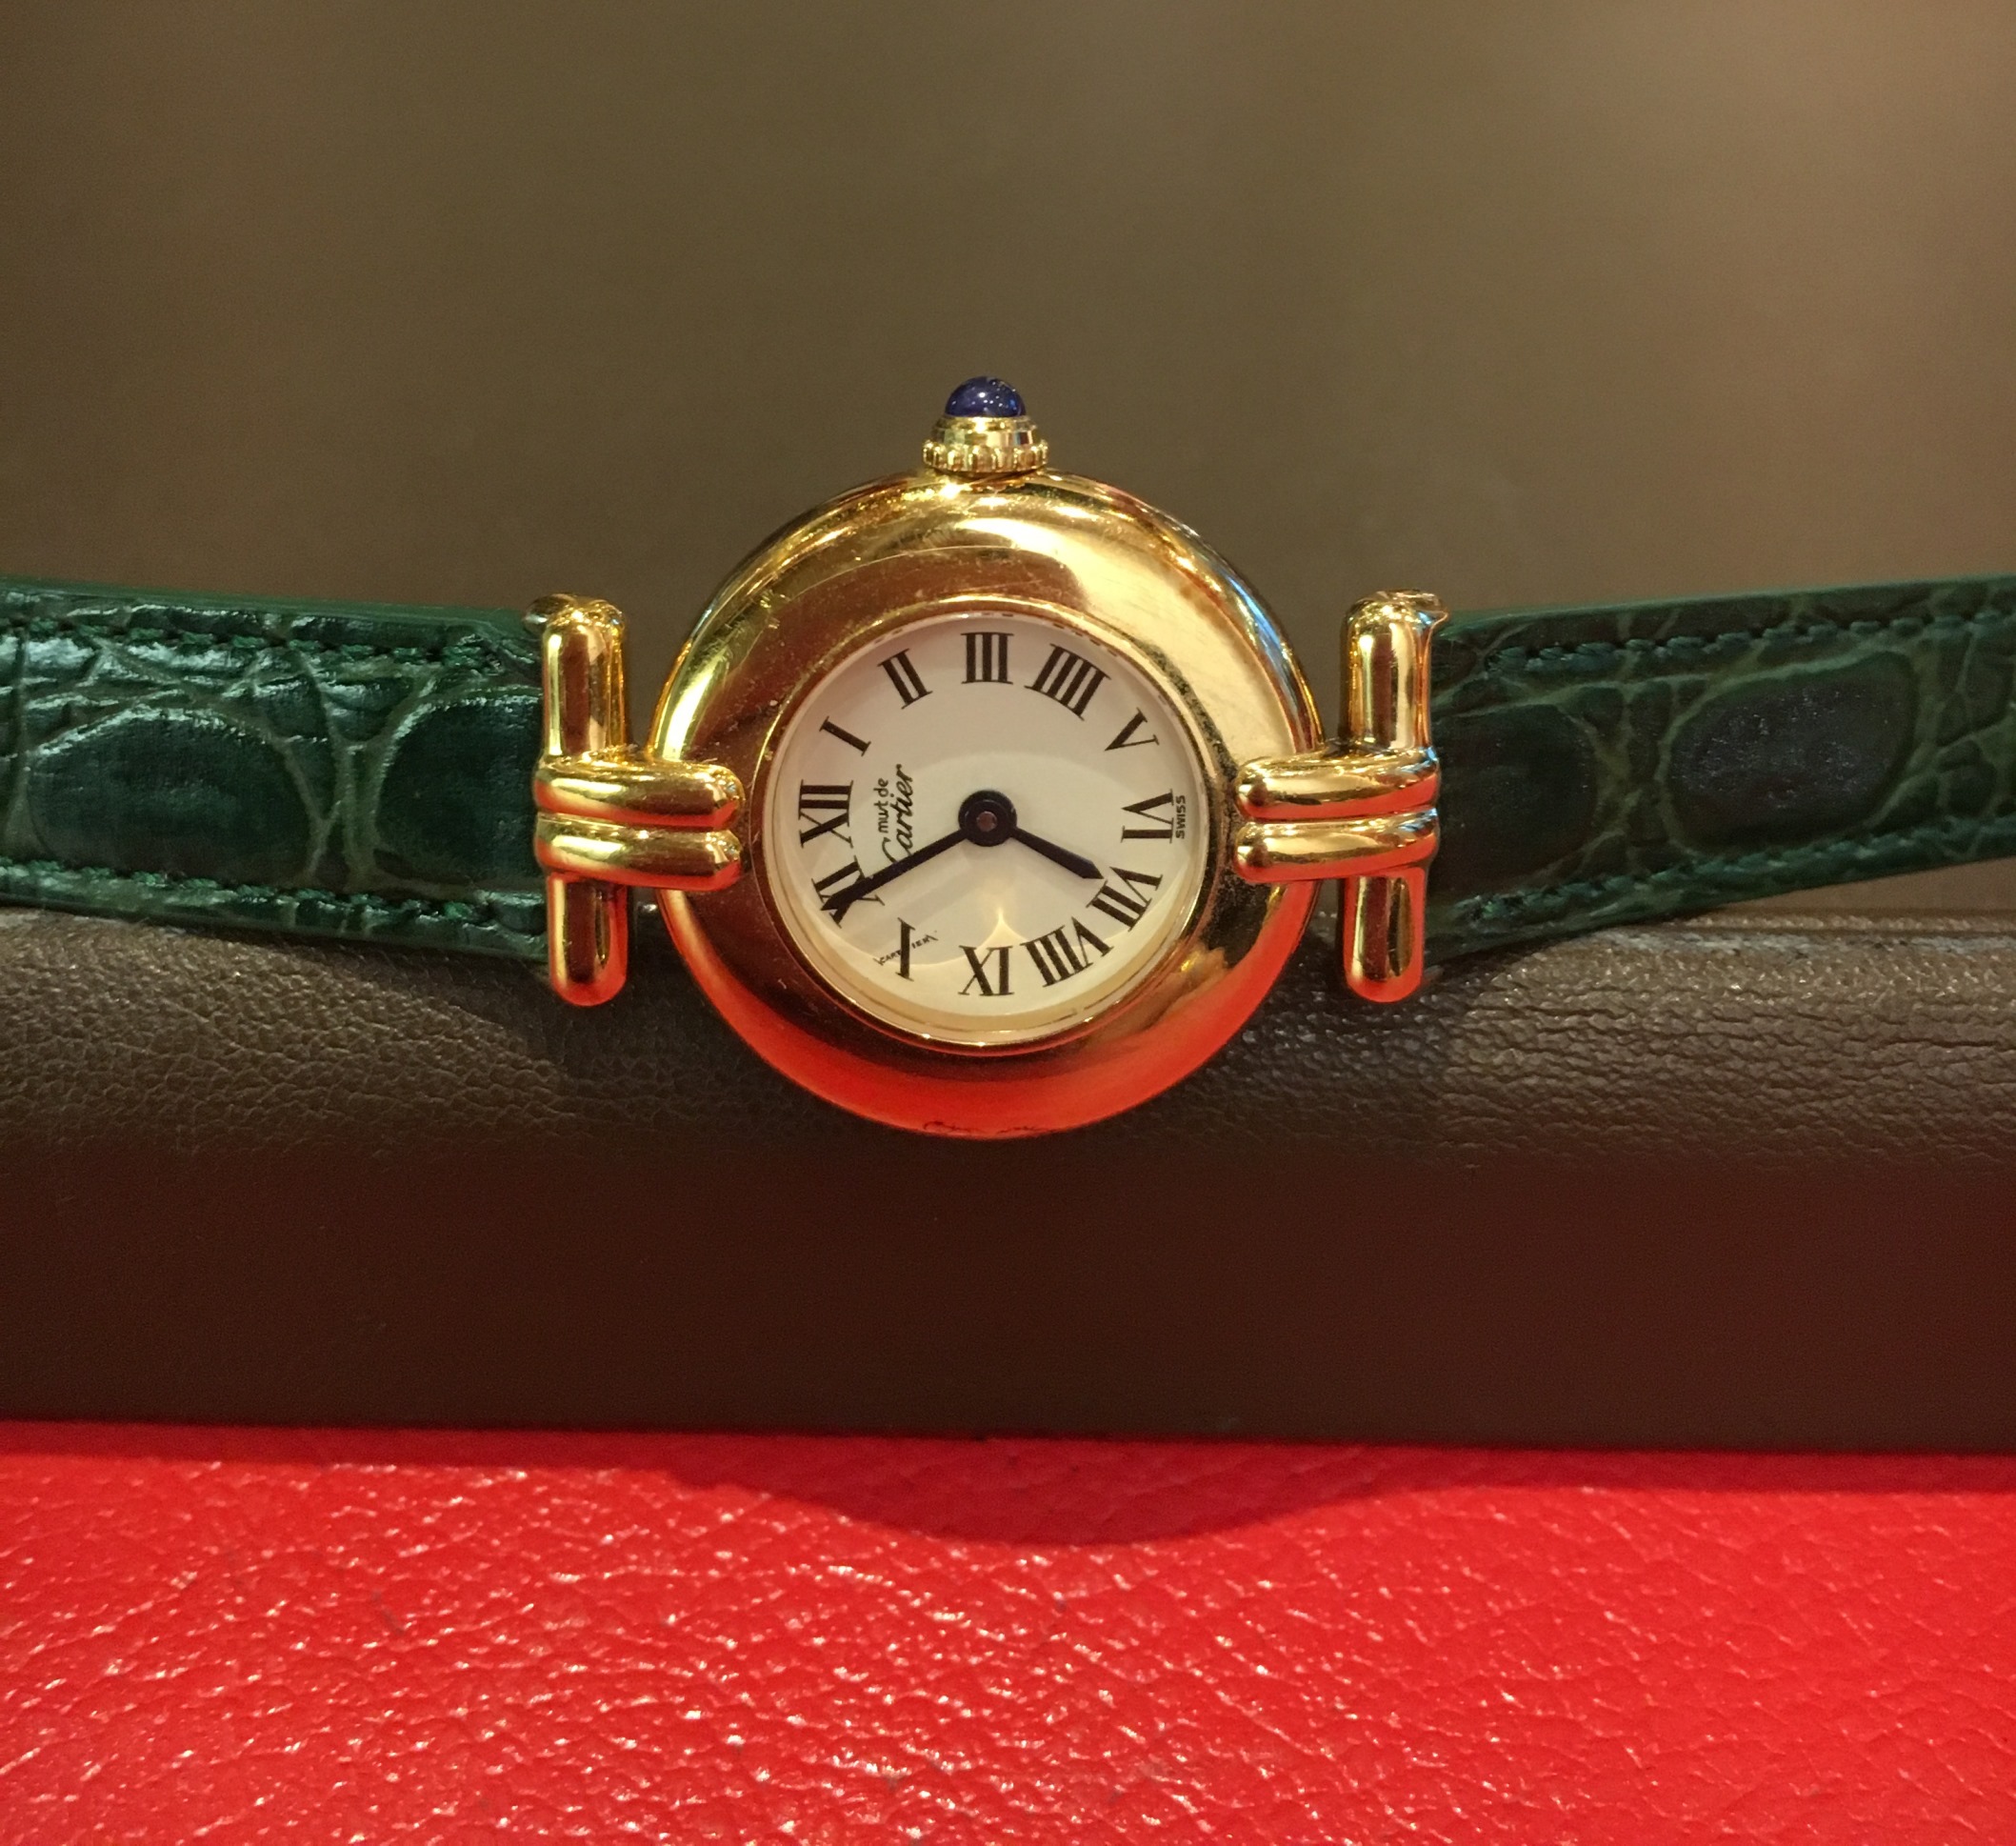 ミモザ(MIMOSA) | ブランド腕時計の正規販売店紹介サイトGressive/グレッシブ